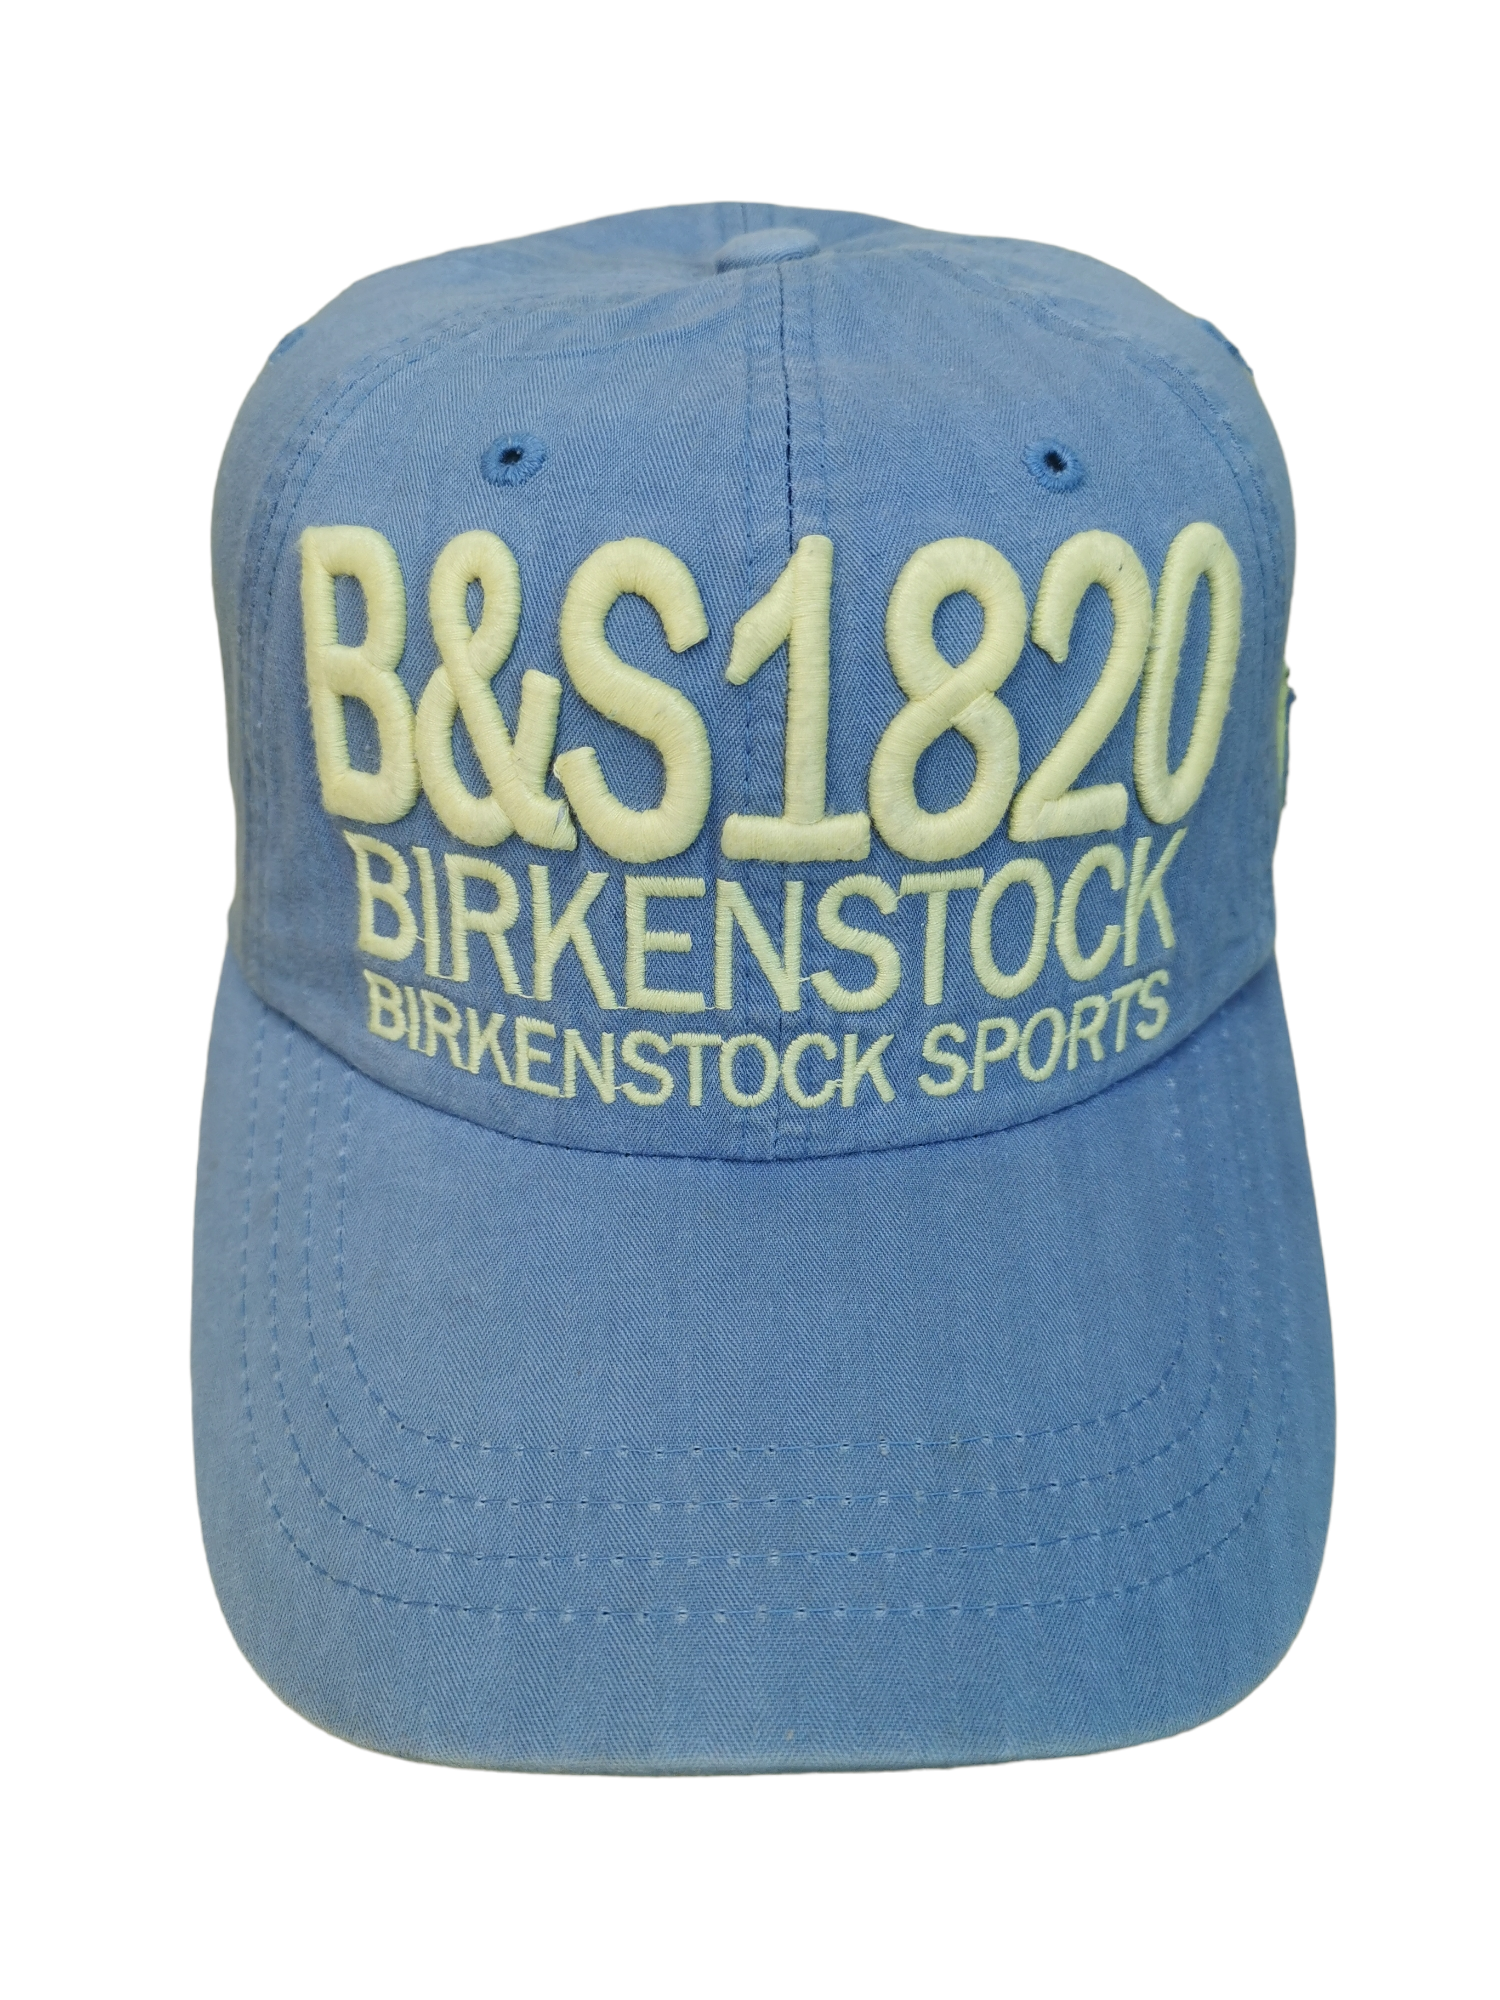 BIRKENSTOCK BRAND STREETWEAR HAT CAP - 1